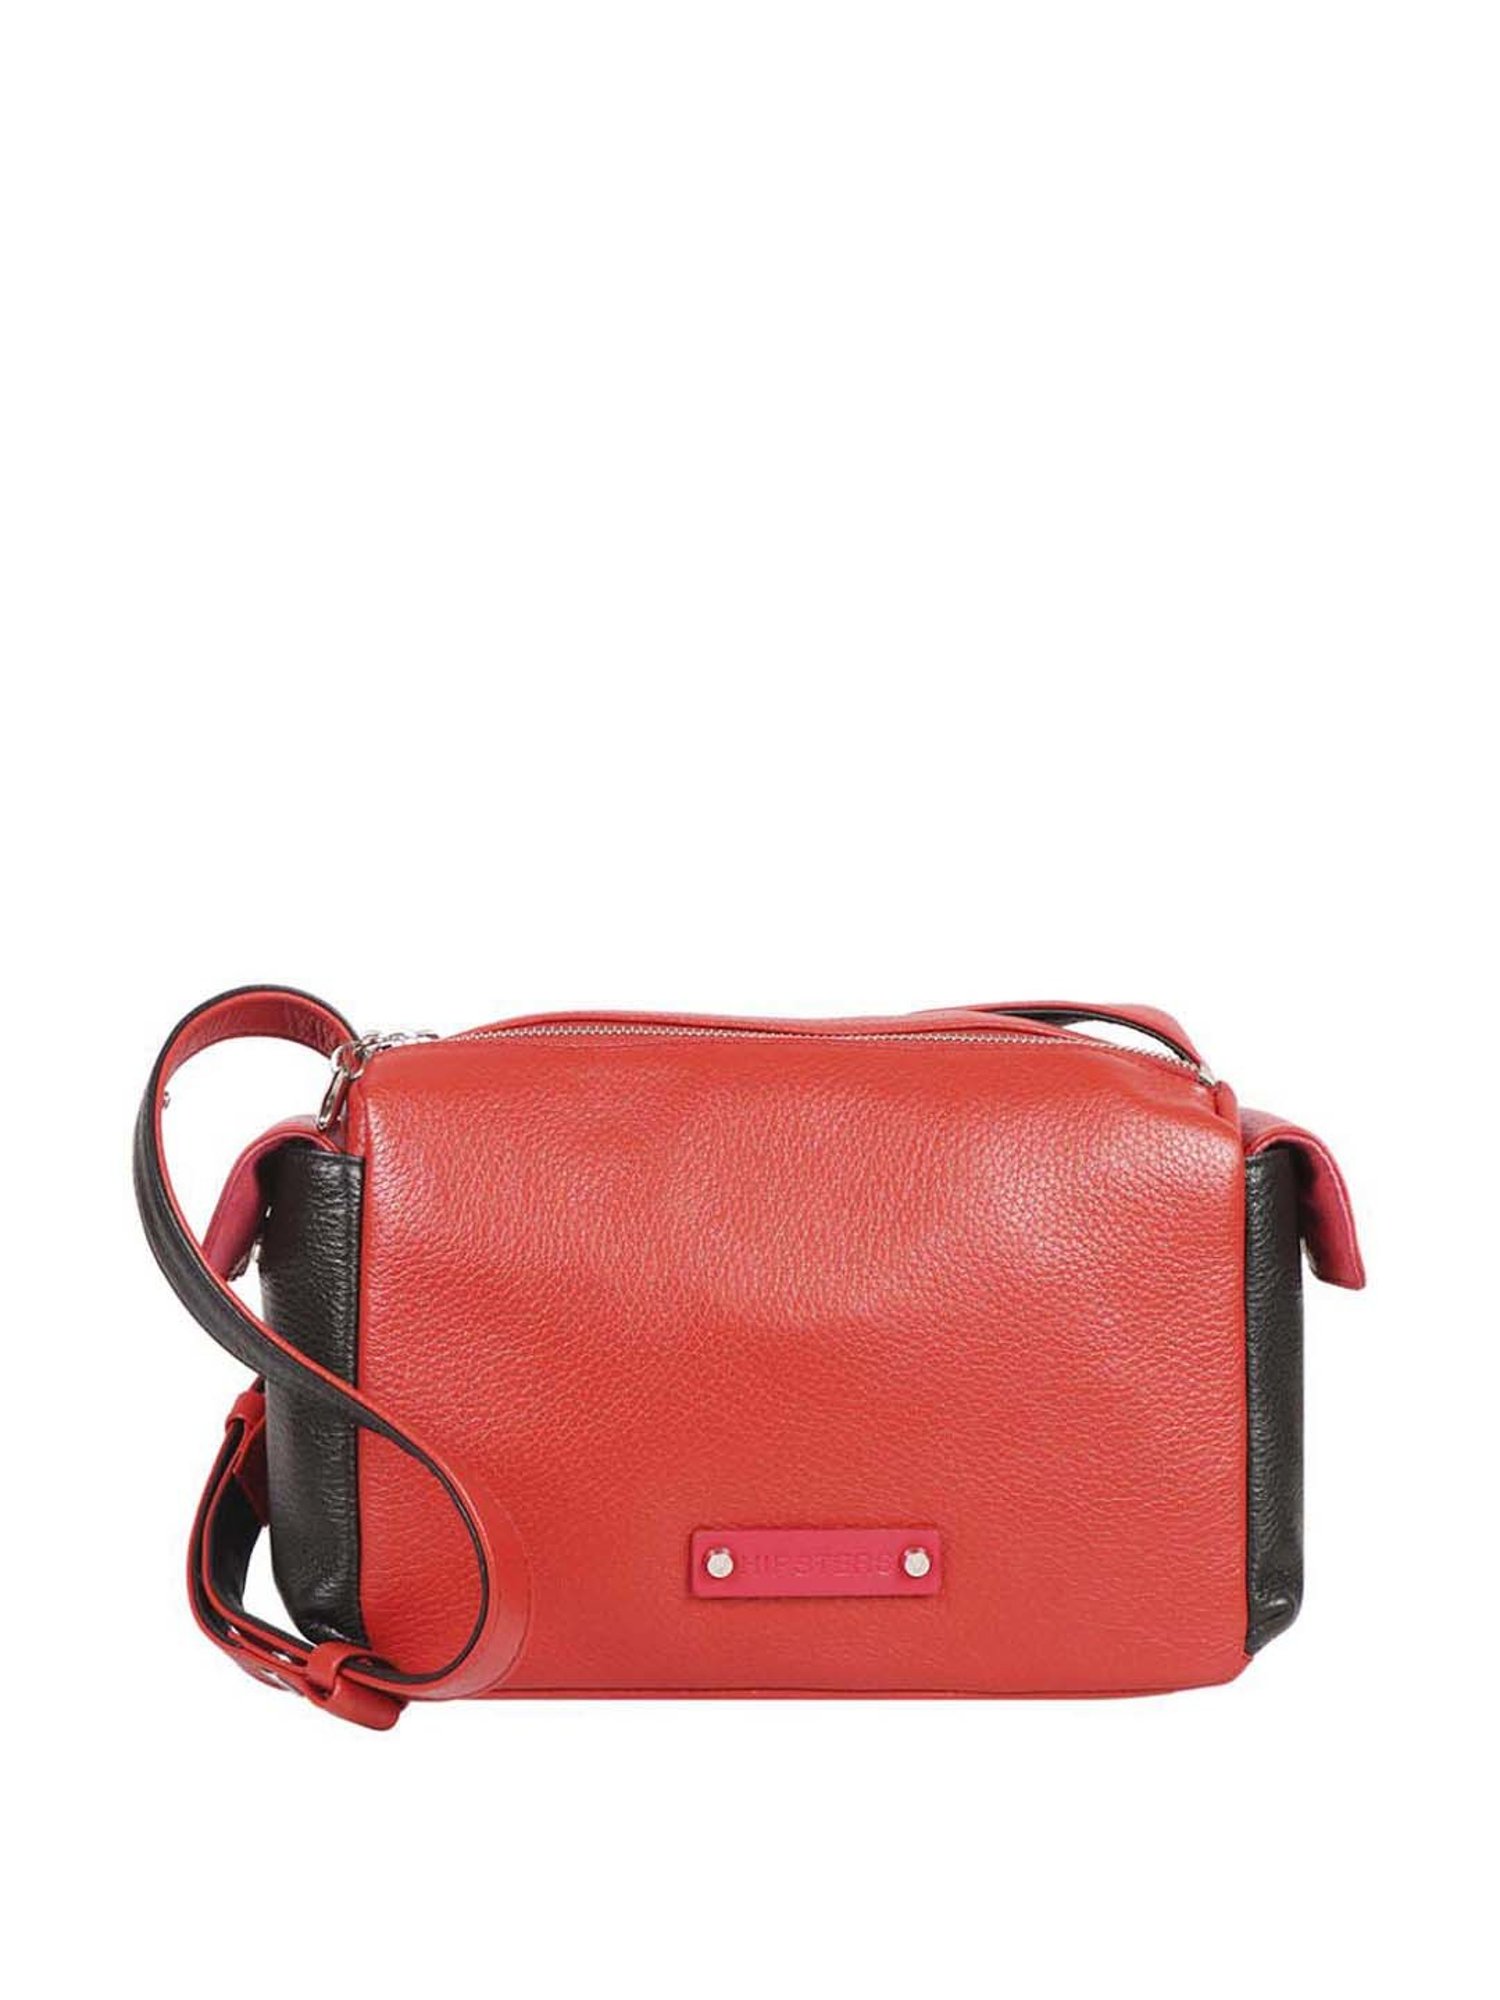 kate spade new york KNOTT PEBBLED LARGE SHOULDER BAG - Handbag - autumnal  red/red - Zalando.co.uk